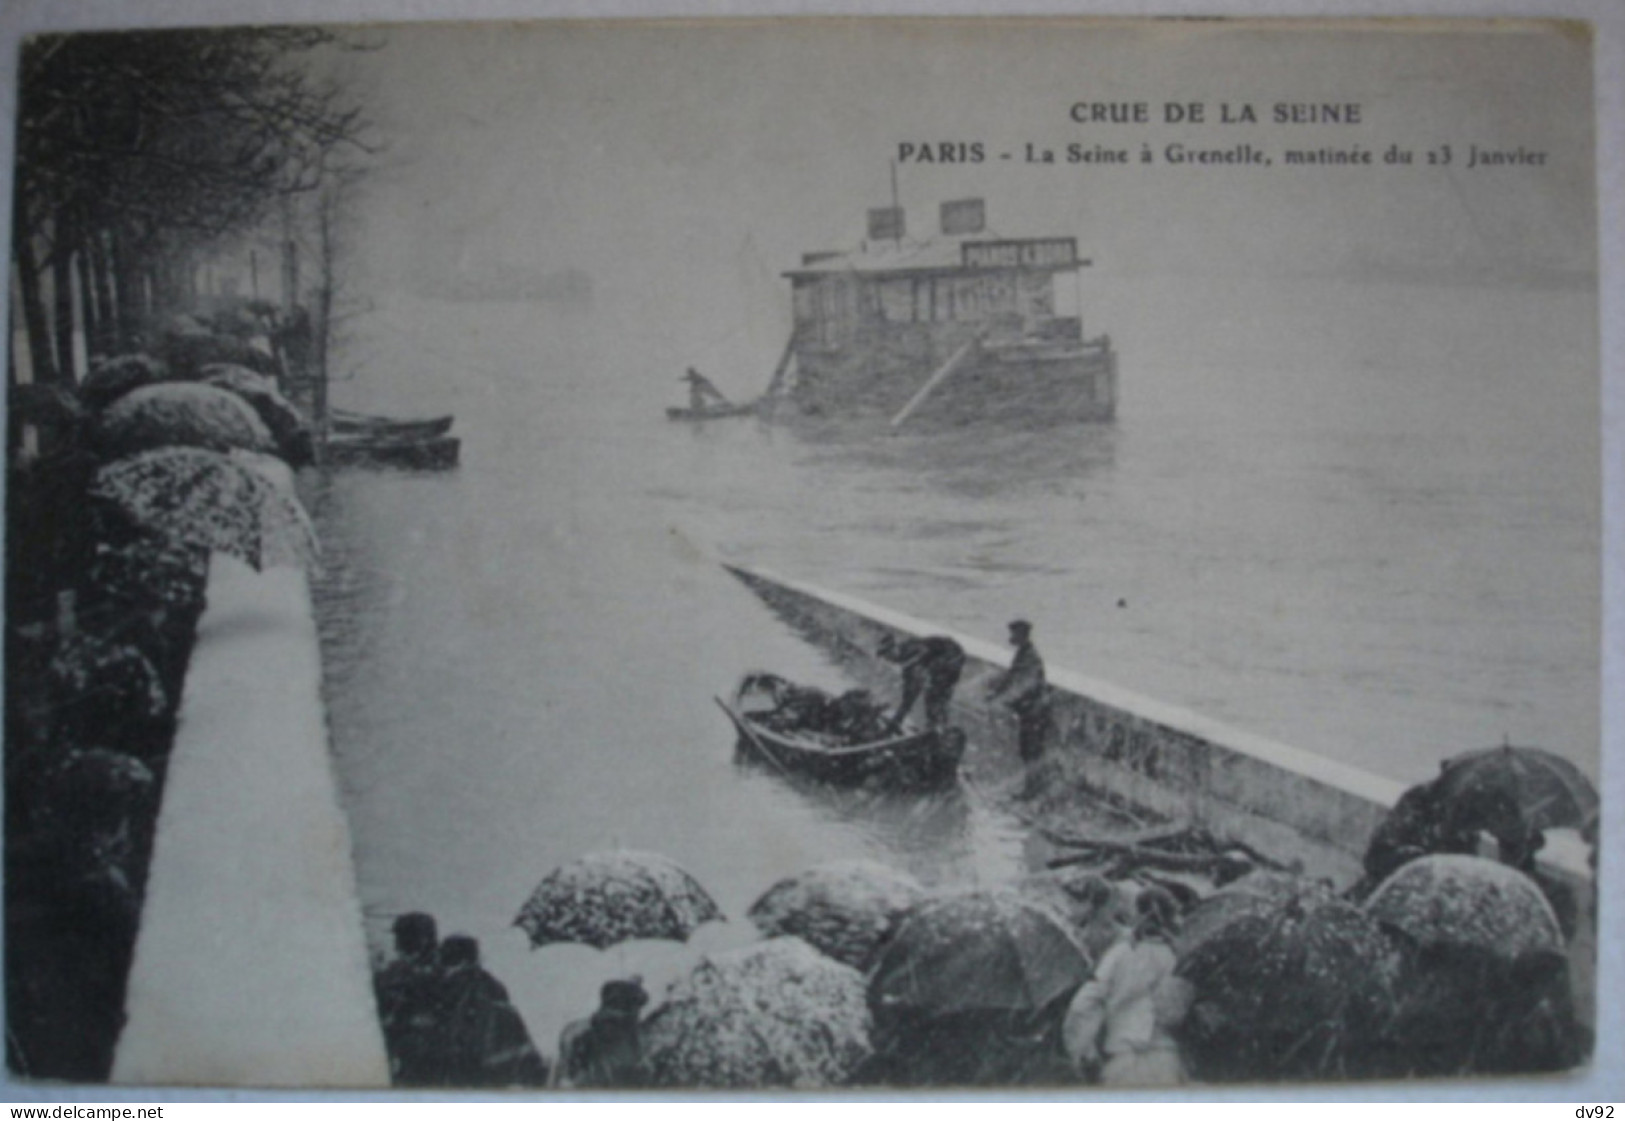 PARIS SEINE A GRENELLE MATINEE DU 23 JANVIER - Paris Flood, 1910